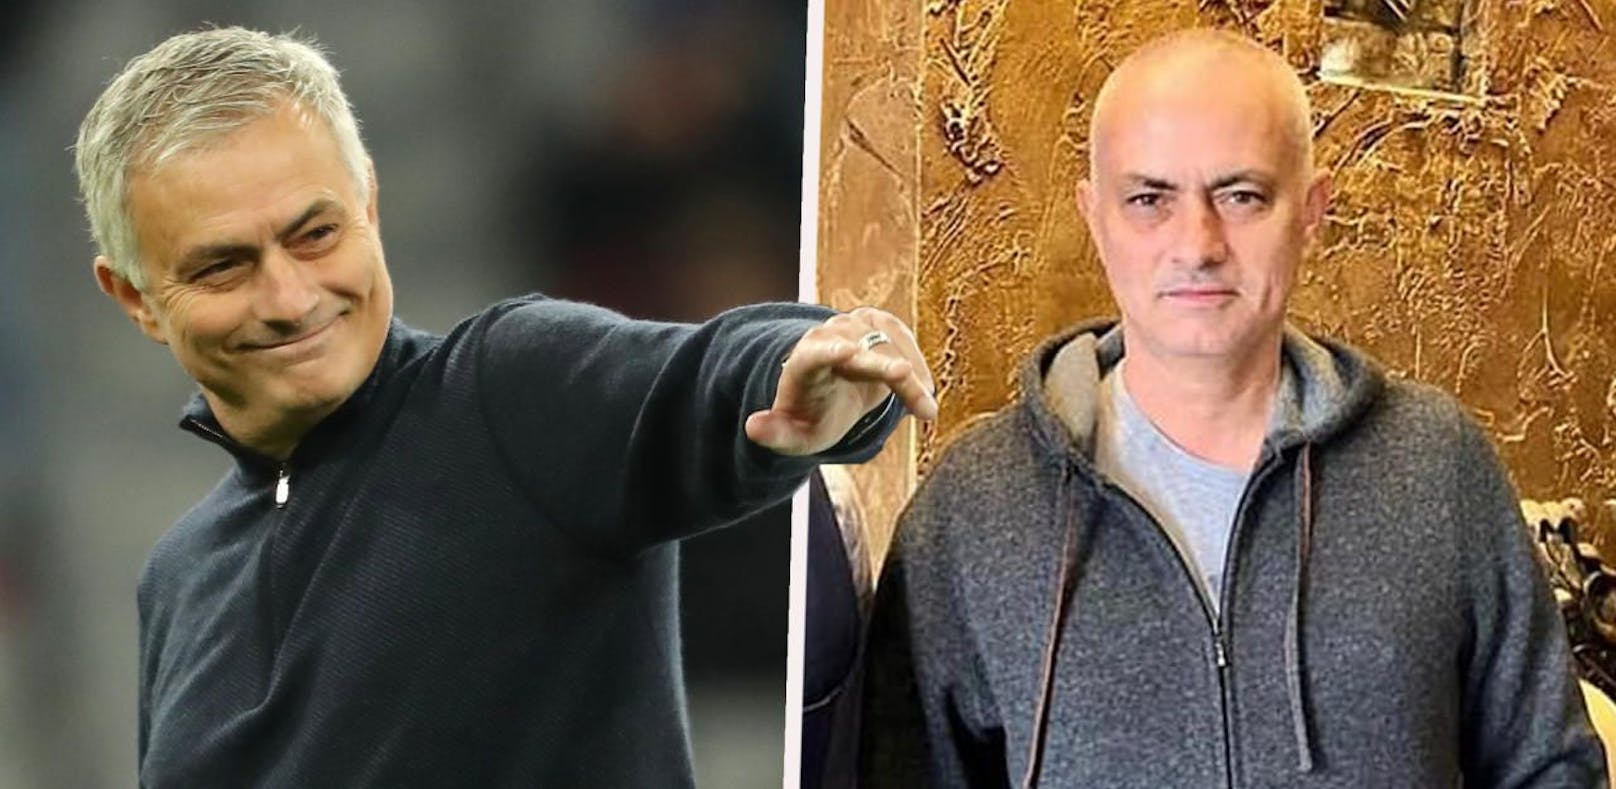 Jose Mourinho vor und nach dem Friseur-Termin